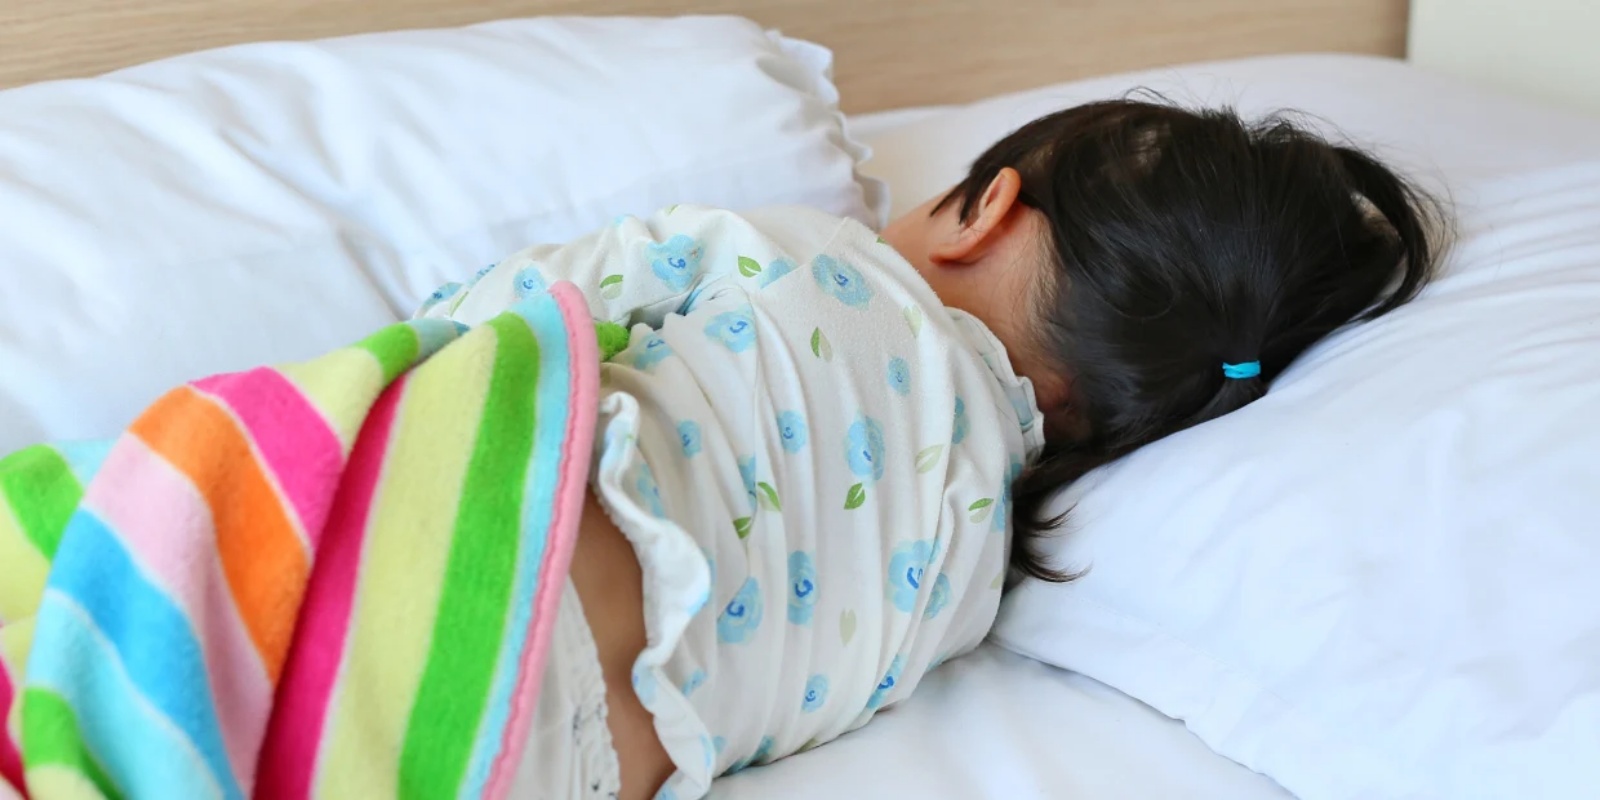 الاستخدام المنتظم للميلاتونين يساعد الأطفال على النوم